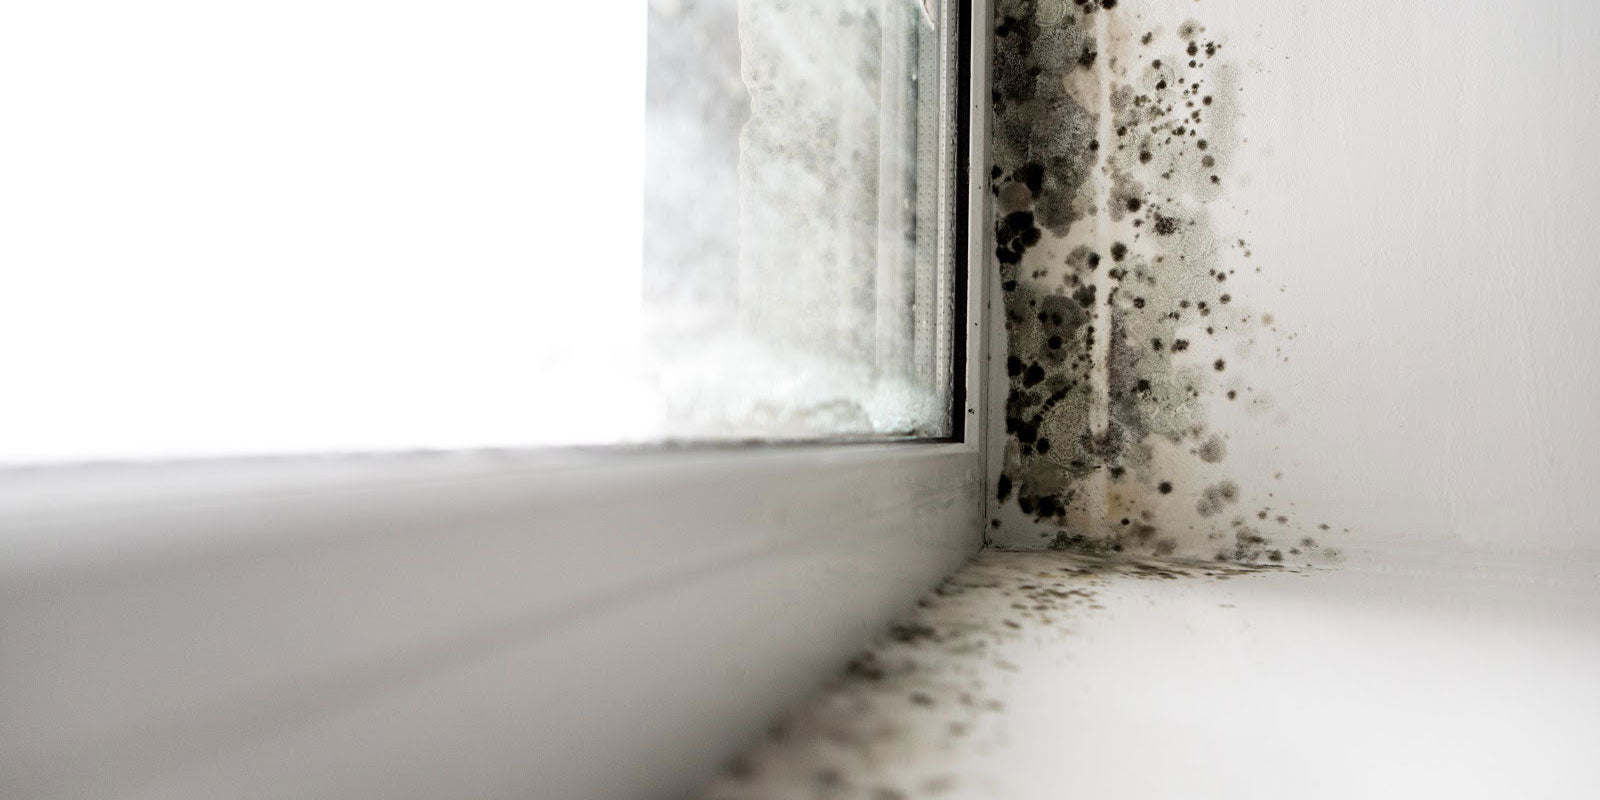 mold growth on windowsill